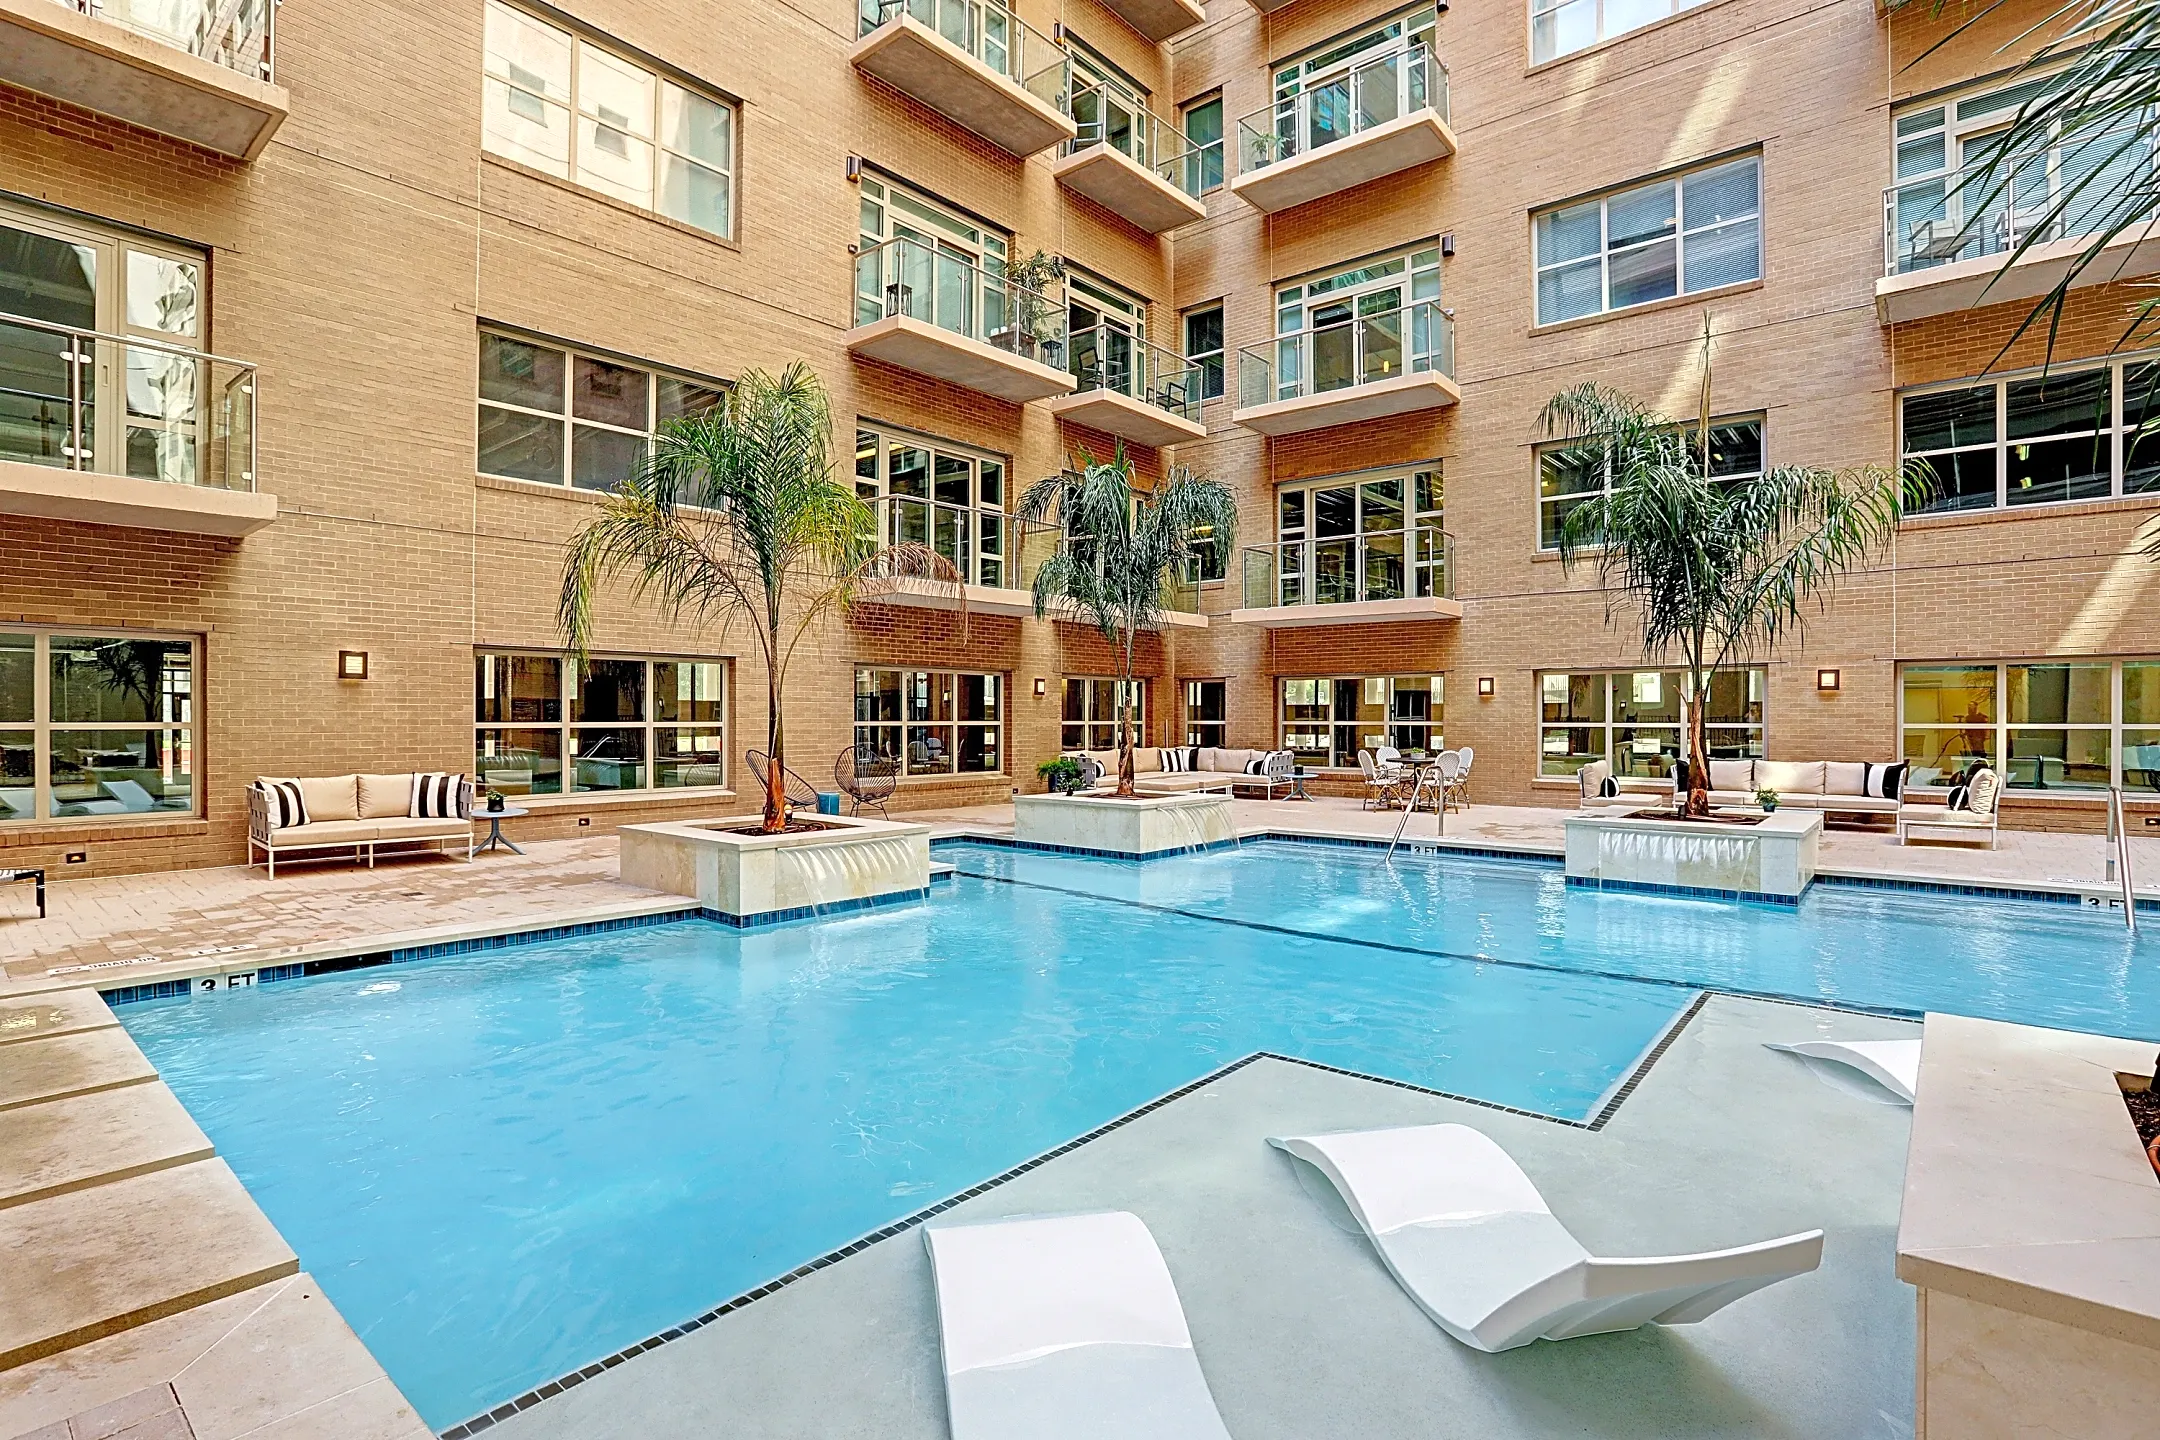 Pool - The Star Apartments - Houston, TX